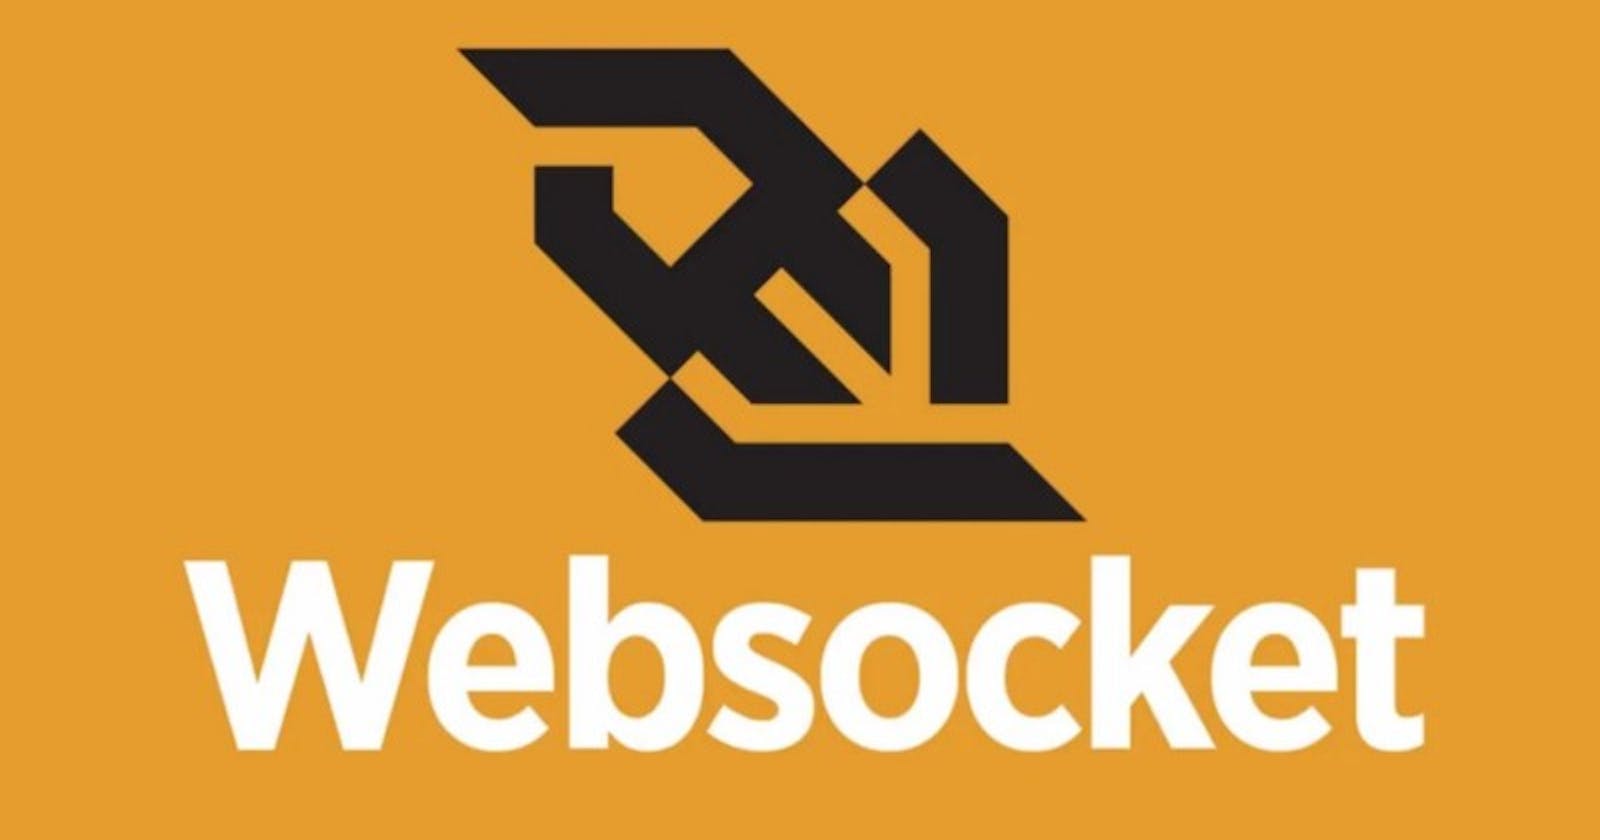 WebSocket: An In-Depth Beginner’s Guide